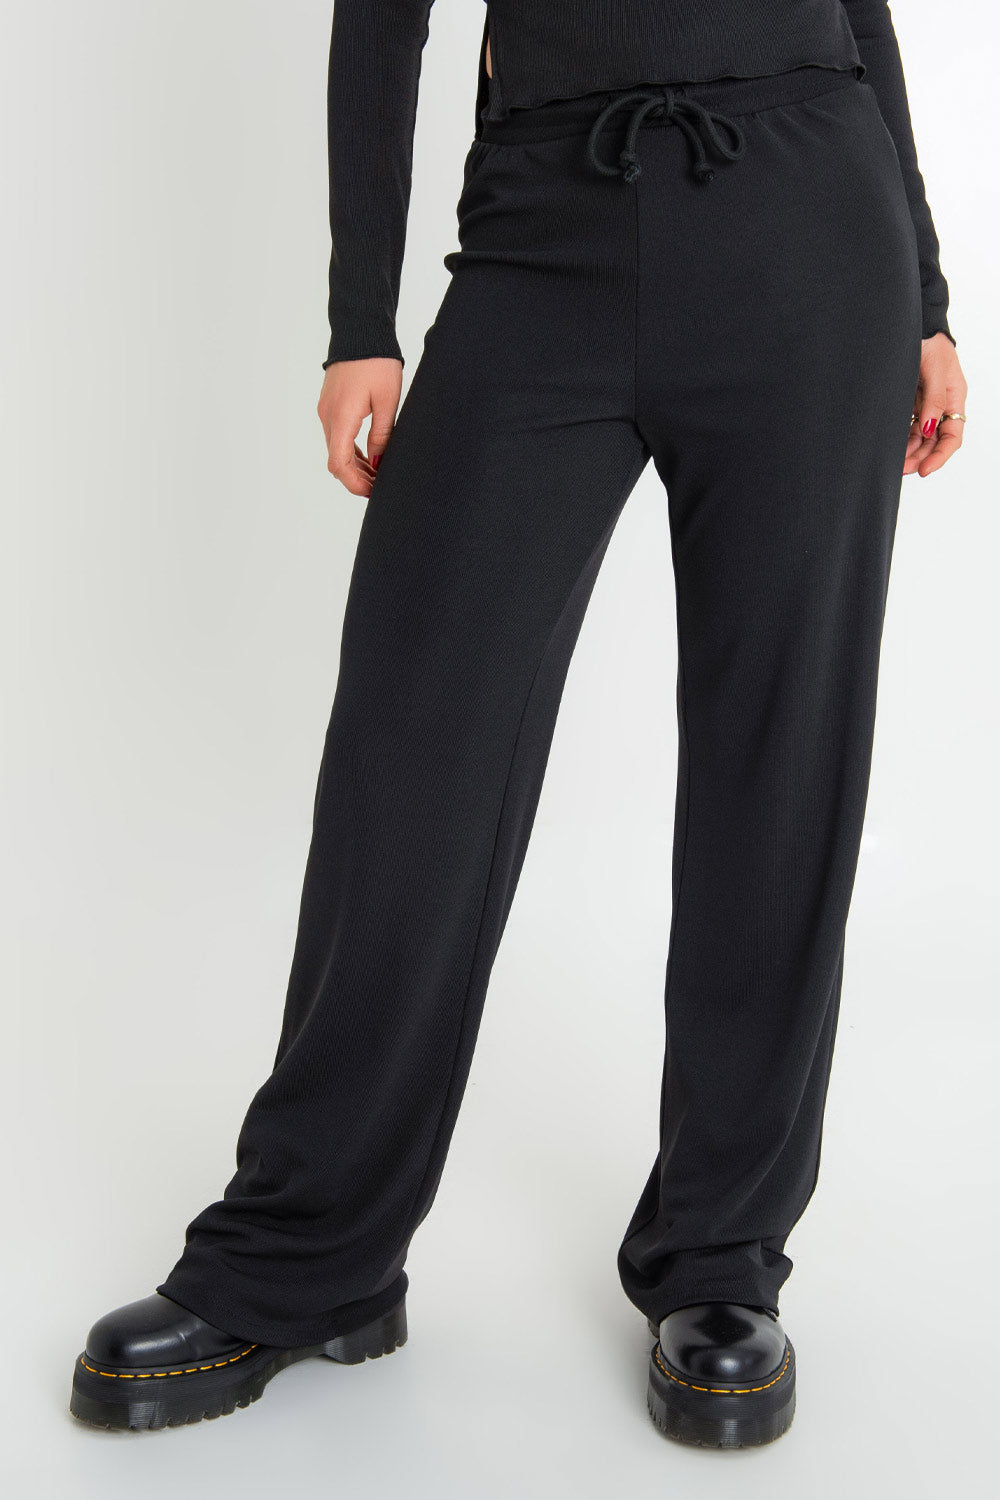 Pantalón de fit wide leg, cintura alta con pretina elástica y jareta frontal ajustable.